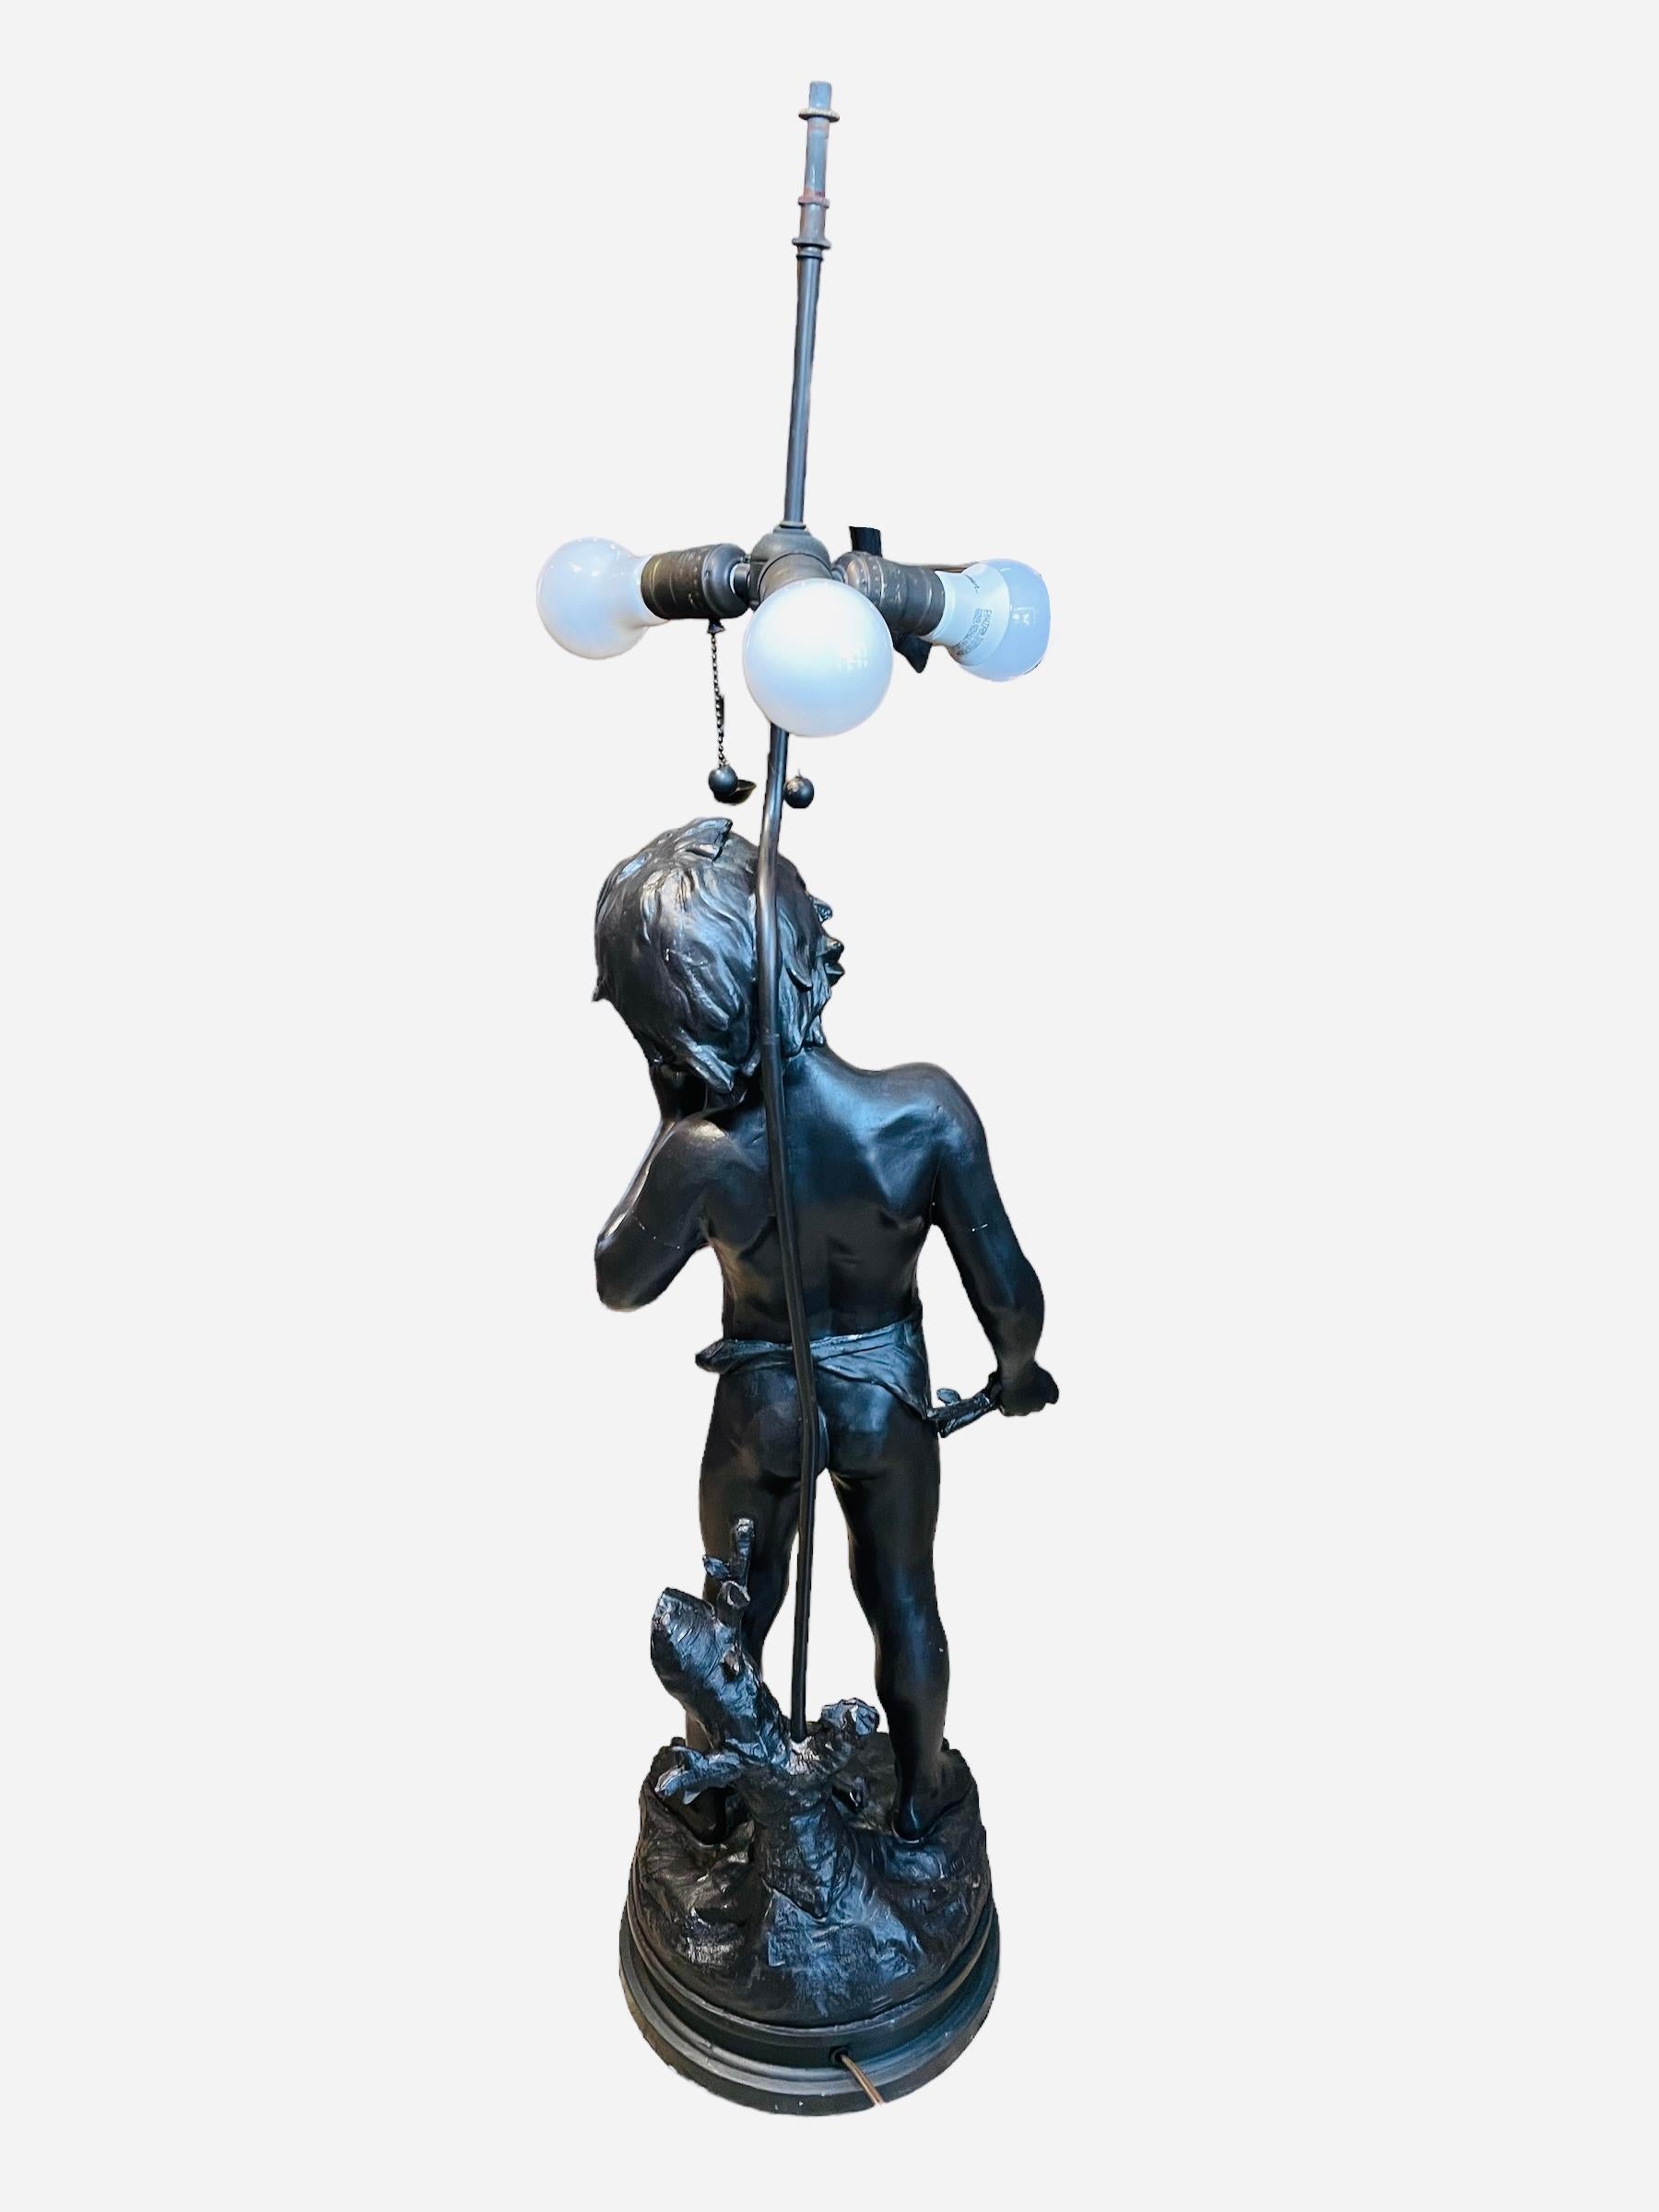 Art Nouveau Auguste Moreau “Charmeur” Patinated Metal Sculpture Lamp